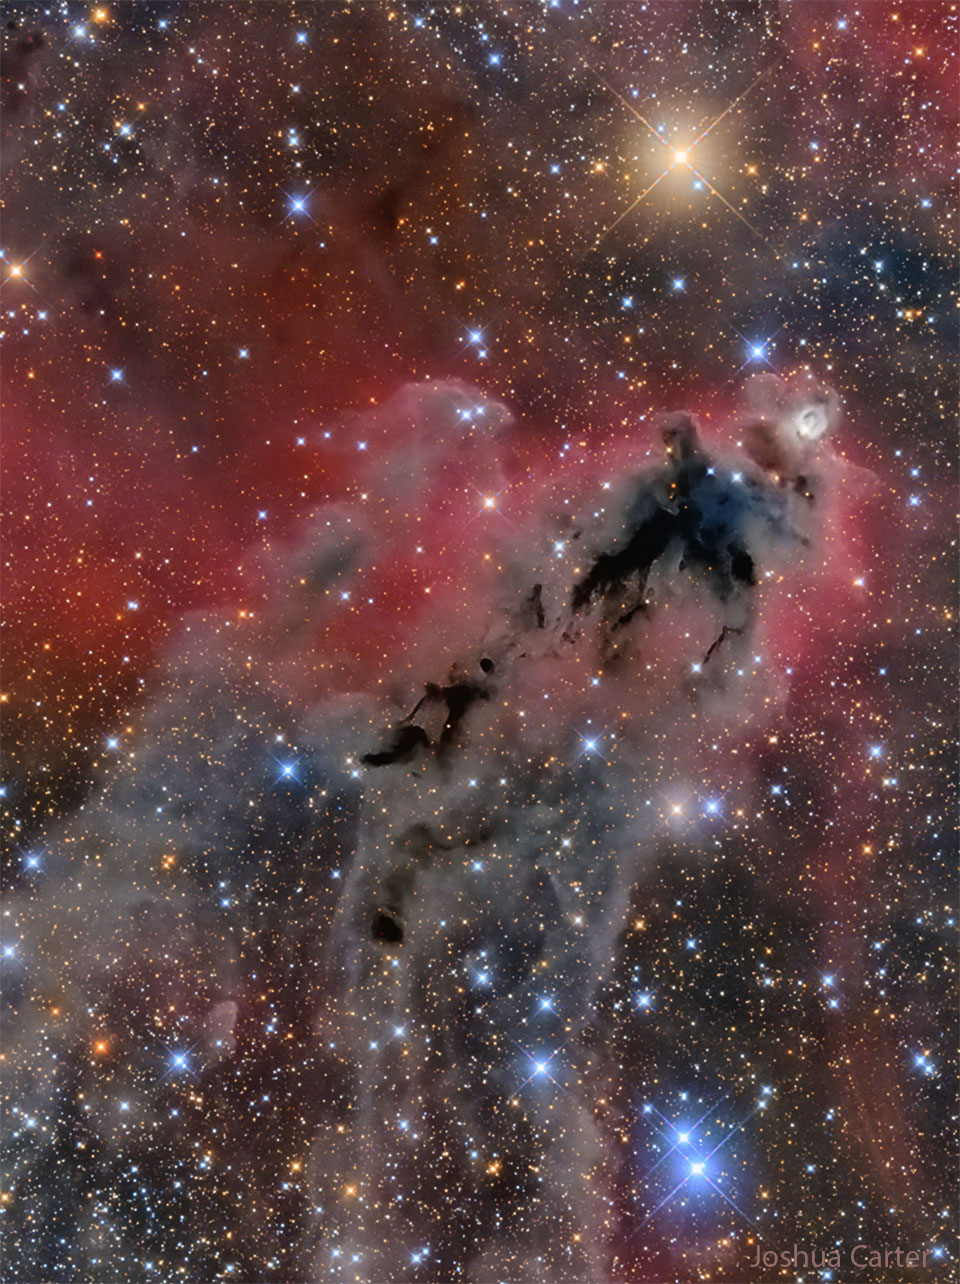 一张不祥的黑暗星云的图像，背景是红色发光的气体和许多明亮多彩的恒星。有关更多详细信息，请参阅说明。